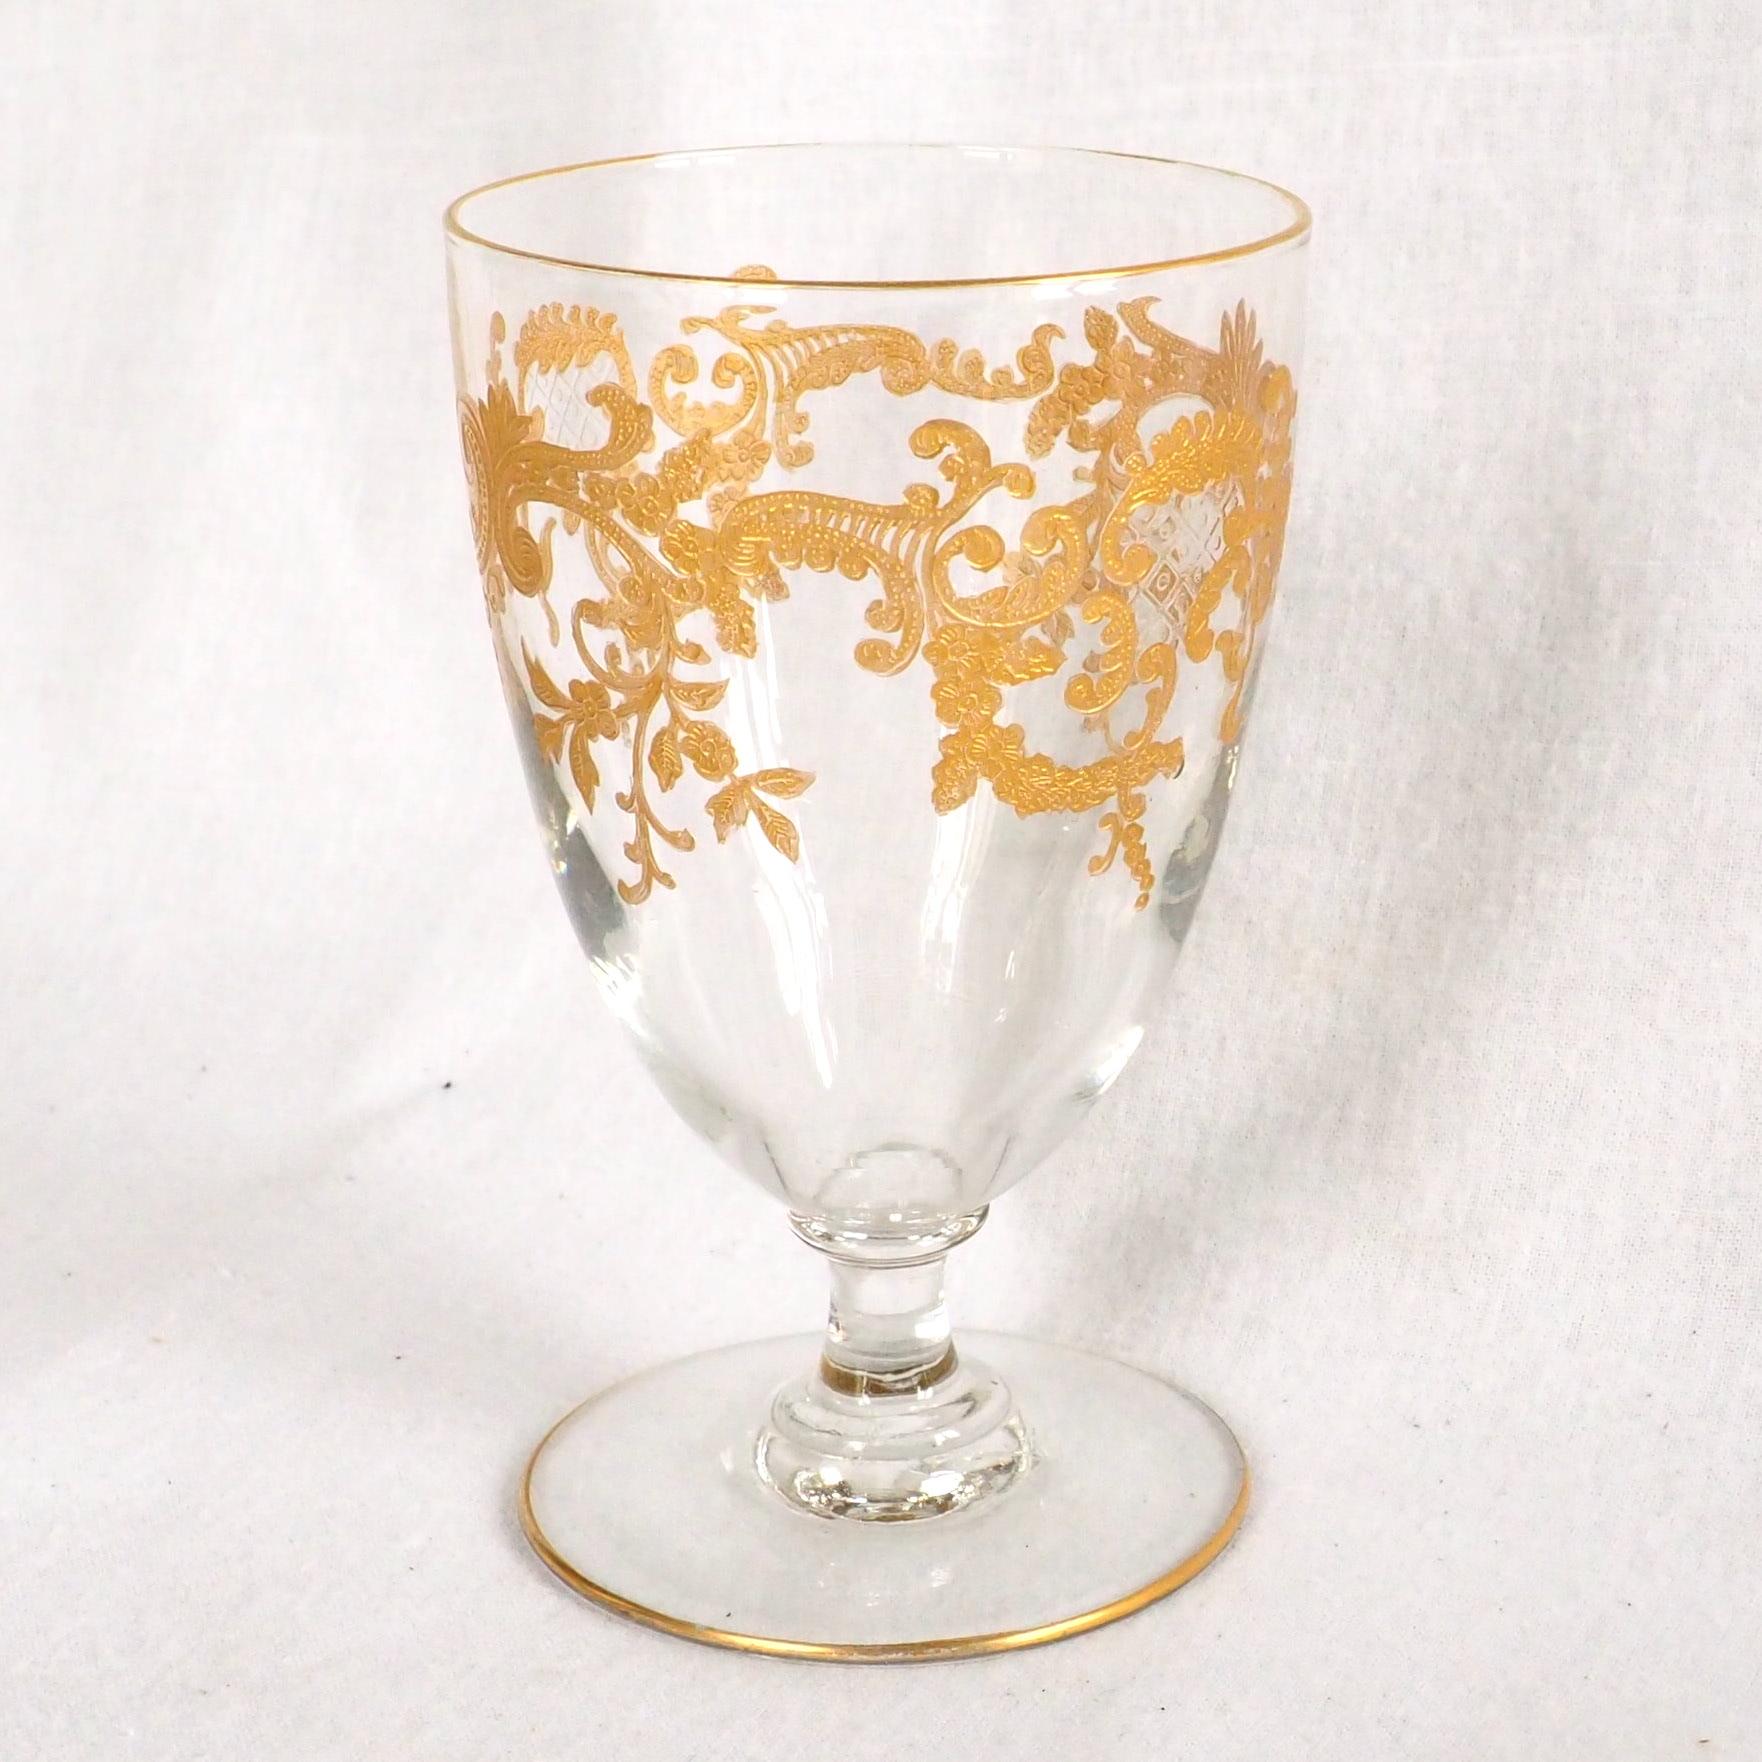 Wasserglas oder Kelch aus Baccarat-Kristall, raffiniert graviertes Muster im Stil des Louis XV-Rokoko, veredelt mit feinem Gold, Ränder ebenfalls vergoldet. Ende des 19. Jahrhunderts, um 1890 - französische Jugendstilproduktion.
Das Glas ist